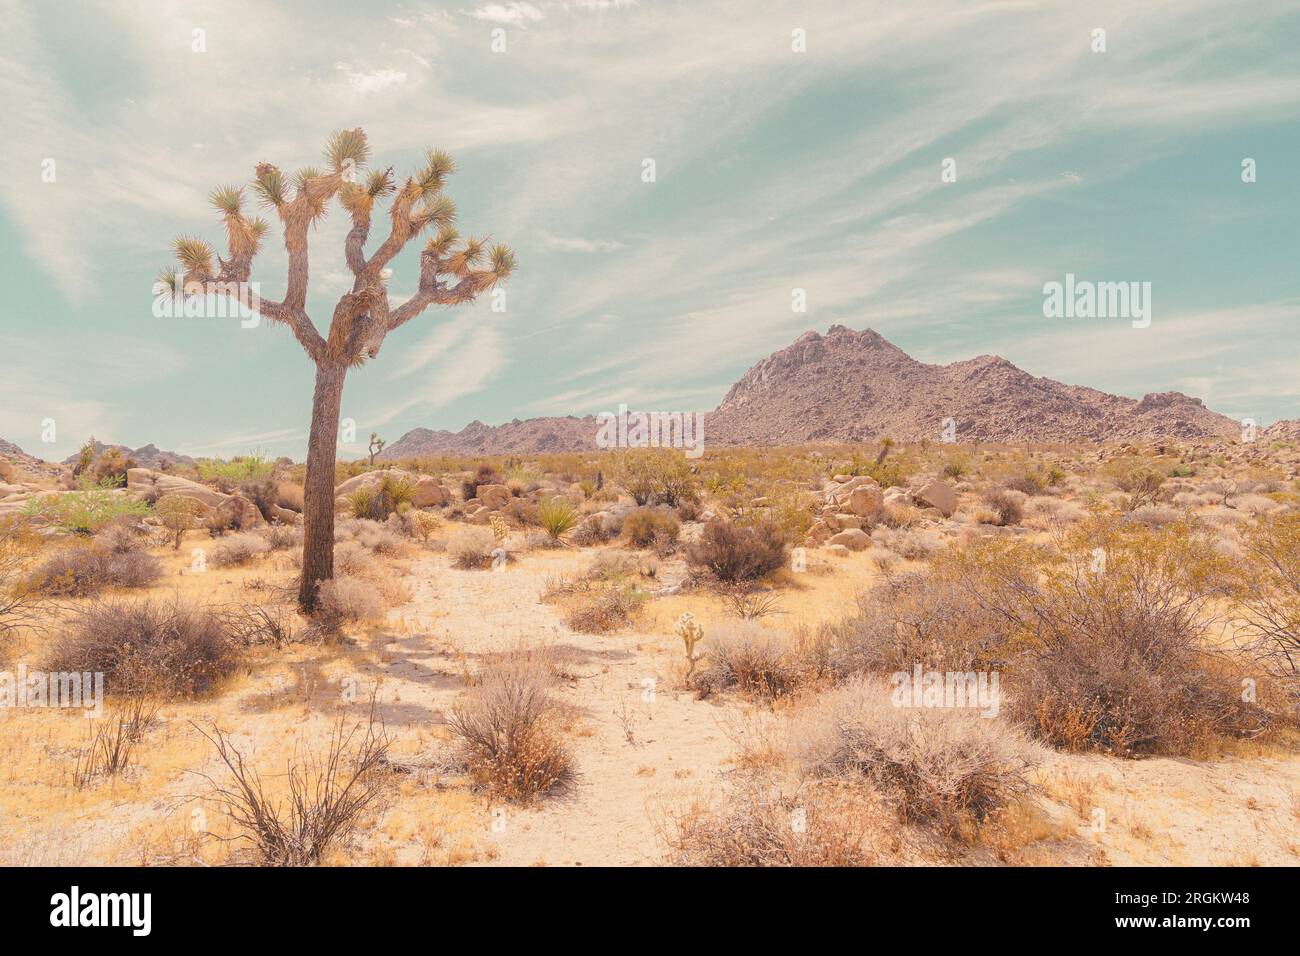 Landschaftsblick auf die Desert View Conservation Area in Joshua Tree, Kalifornien. Querformat mit einem High-Key-Fotostil. Stockfoto